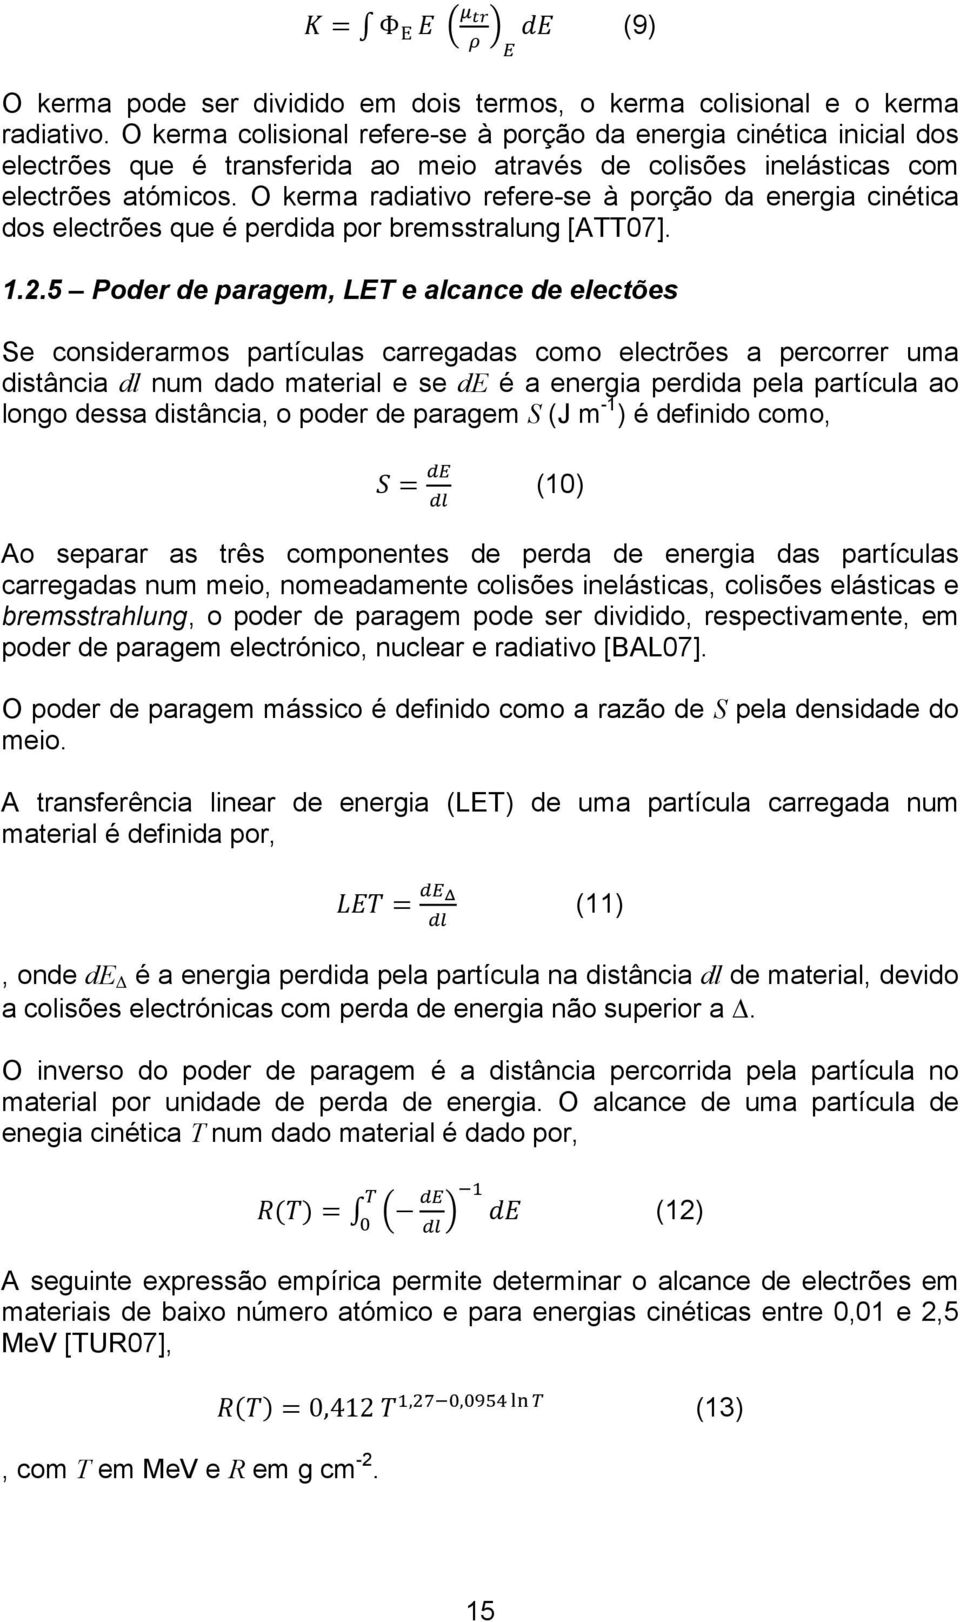 O kerma radiativo refere-se à porção da energia cinética dos electrões que é perdida por bremsstralung [ATT07]. 1.2.